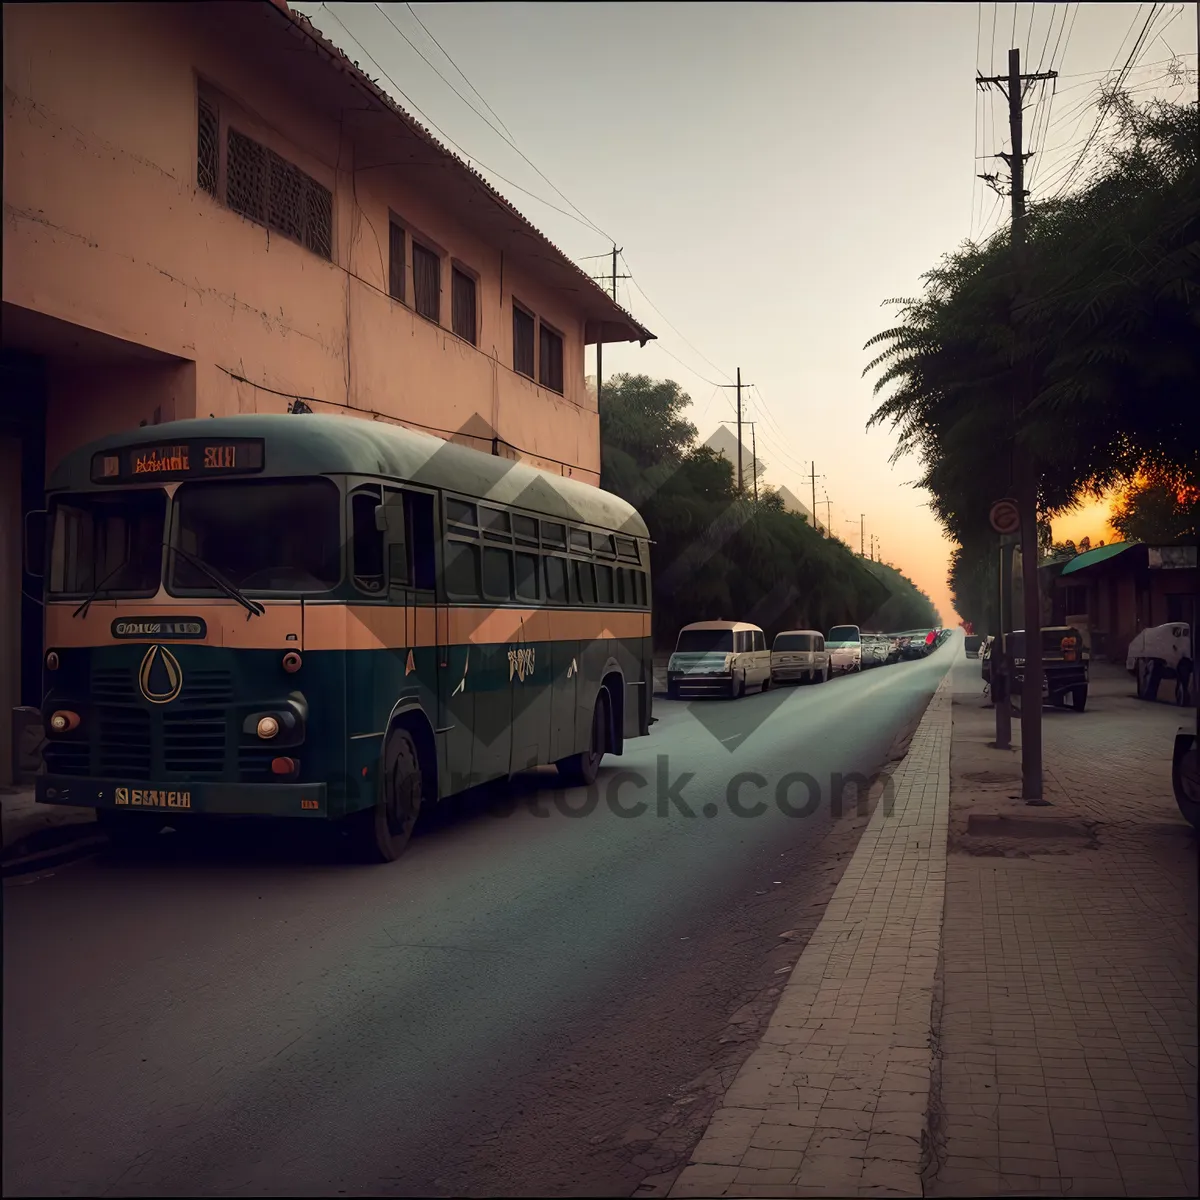 Picture of Urban Shuttle Bus: Convenient City Transportation